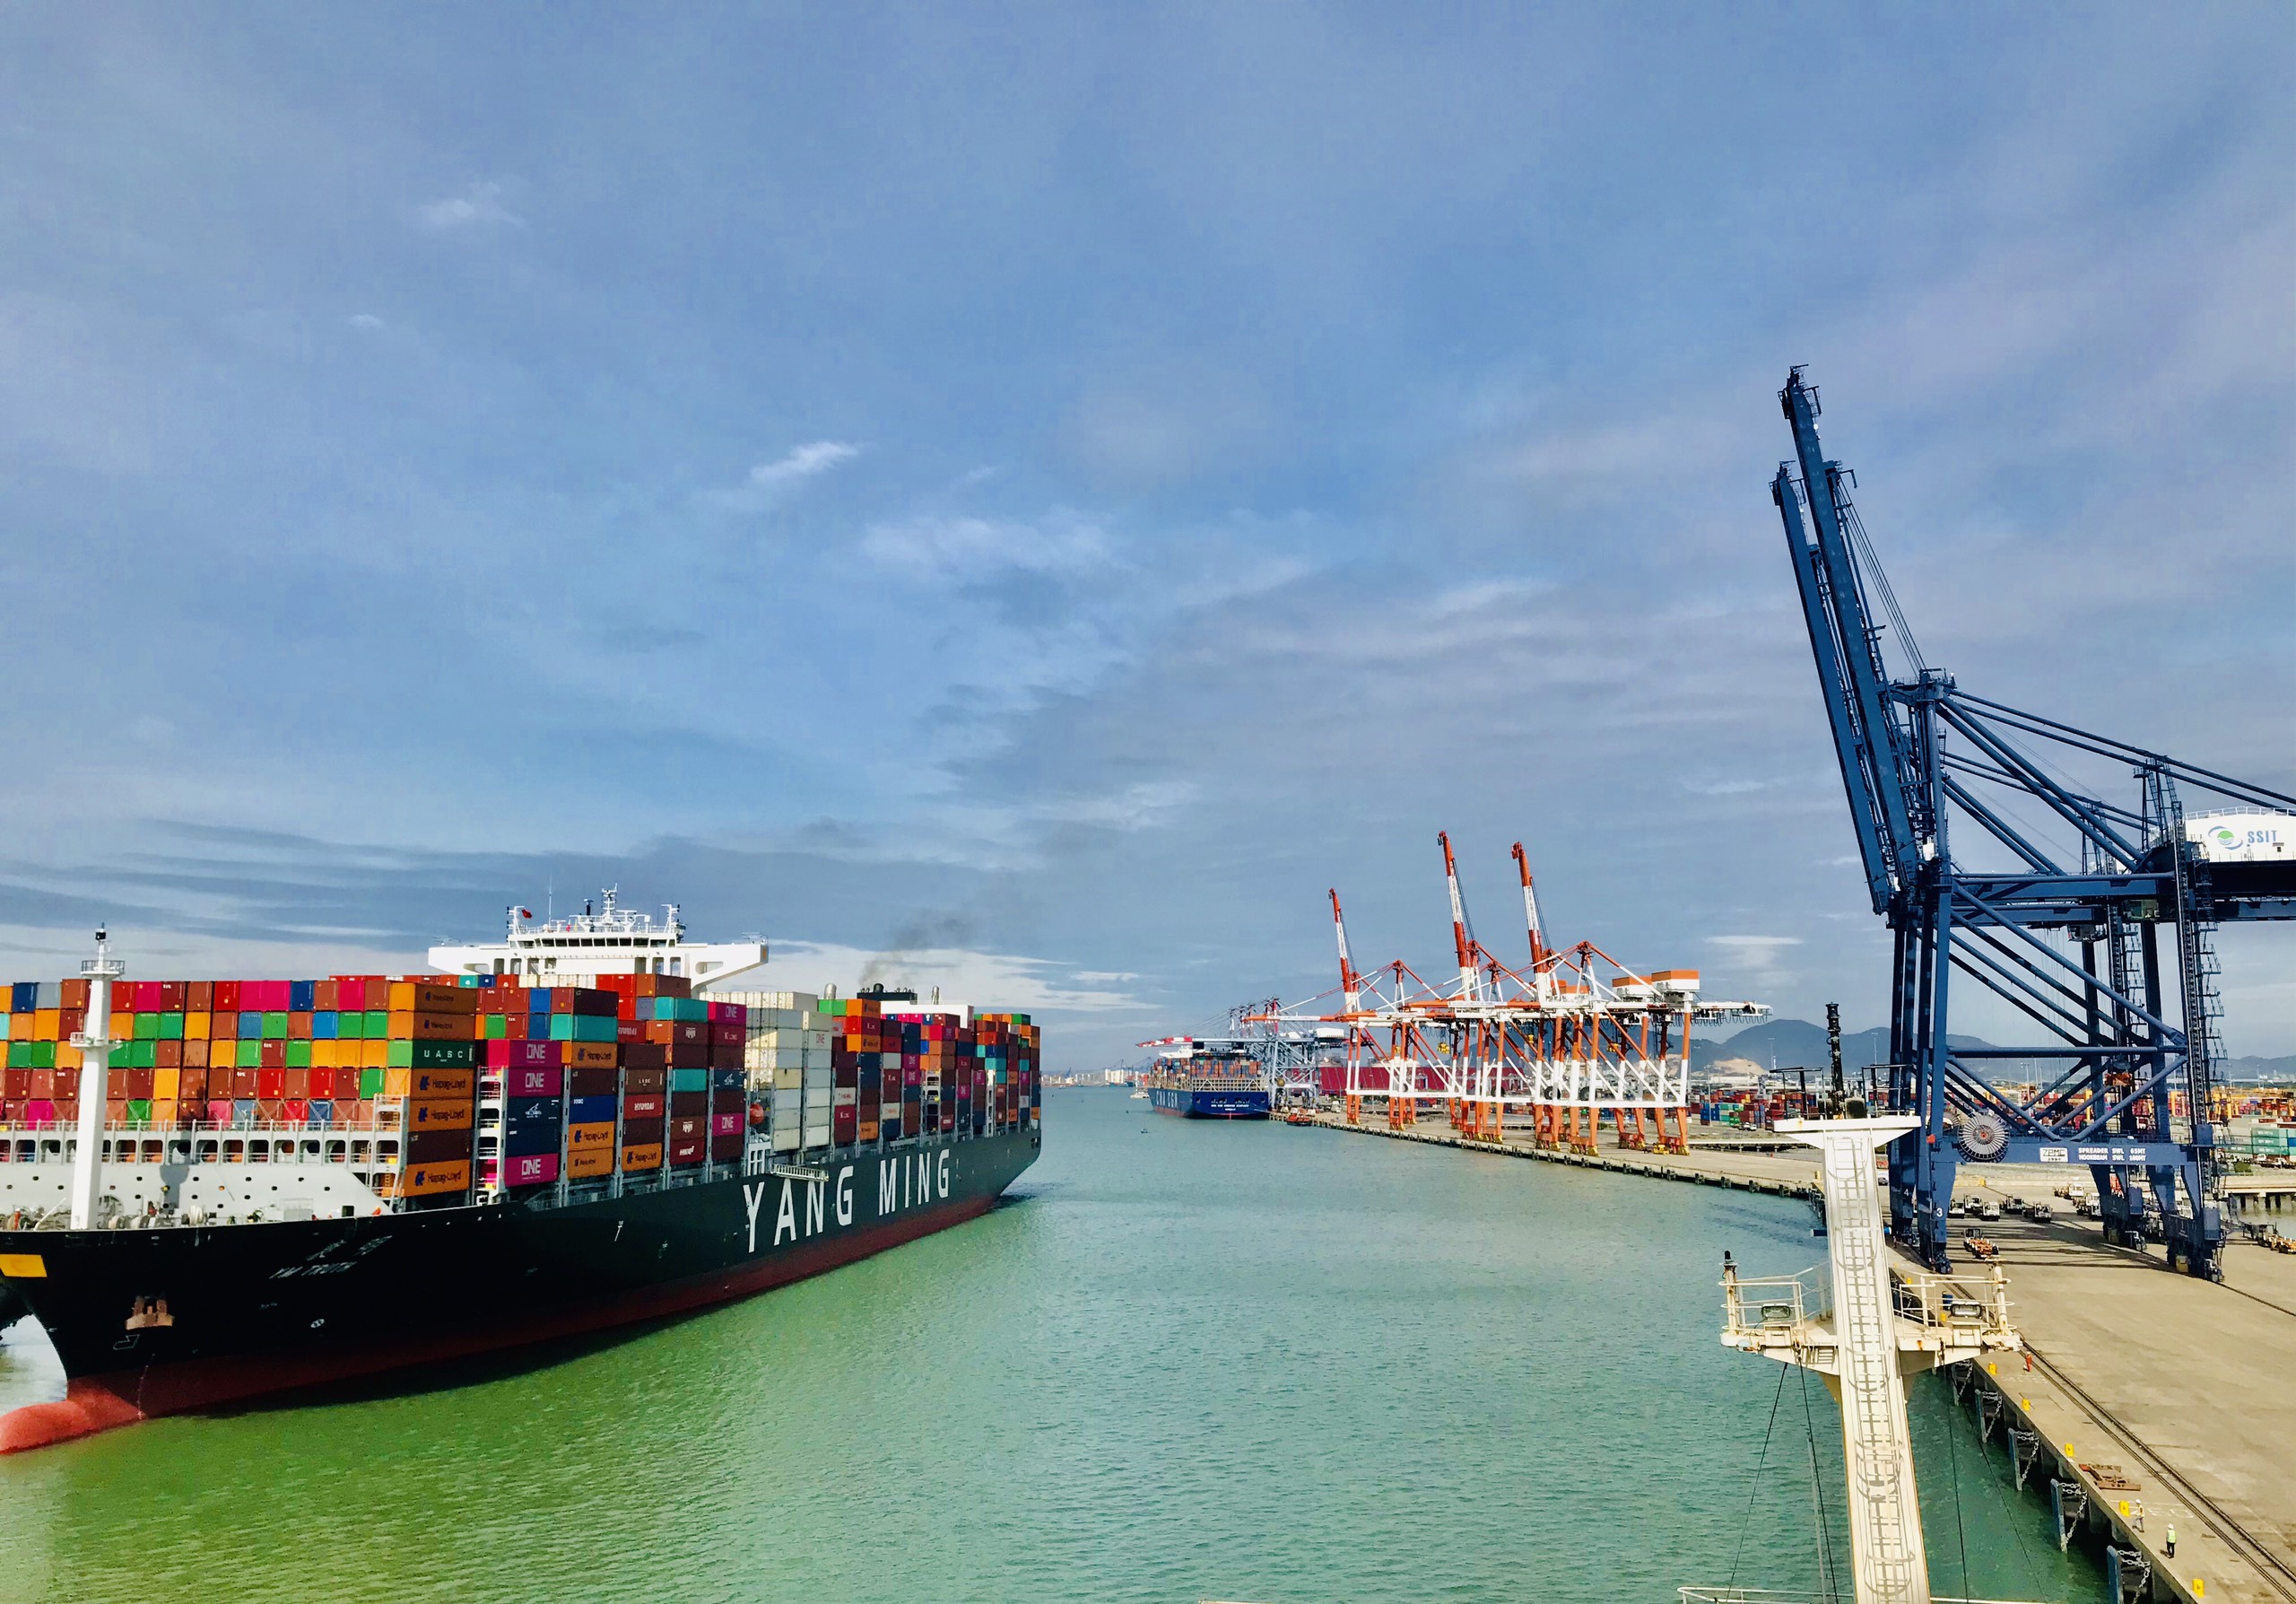 Container Quốc tế Cảng Sài Gòn - SSA (SSIT), chủ đầu tư cảng SSIT nằm trong cụm cảng Cái Mép -Thị Vải